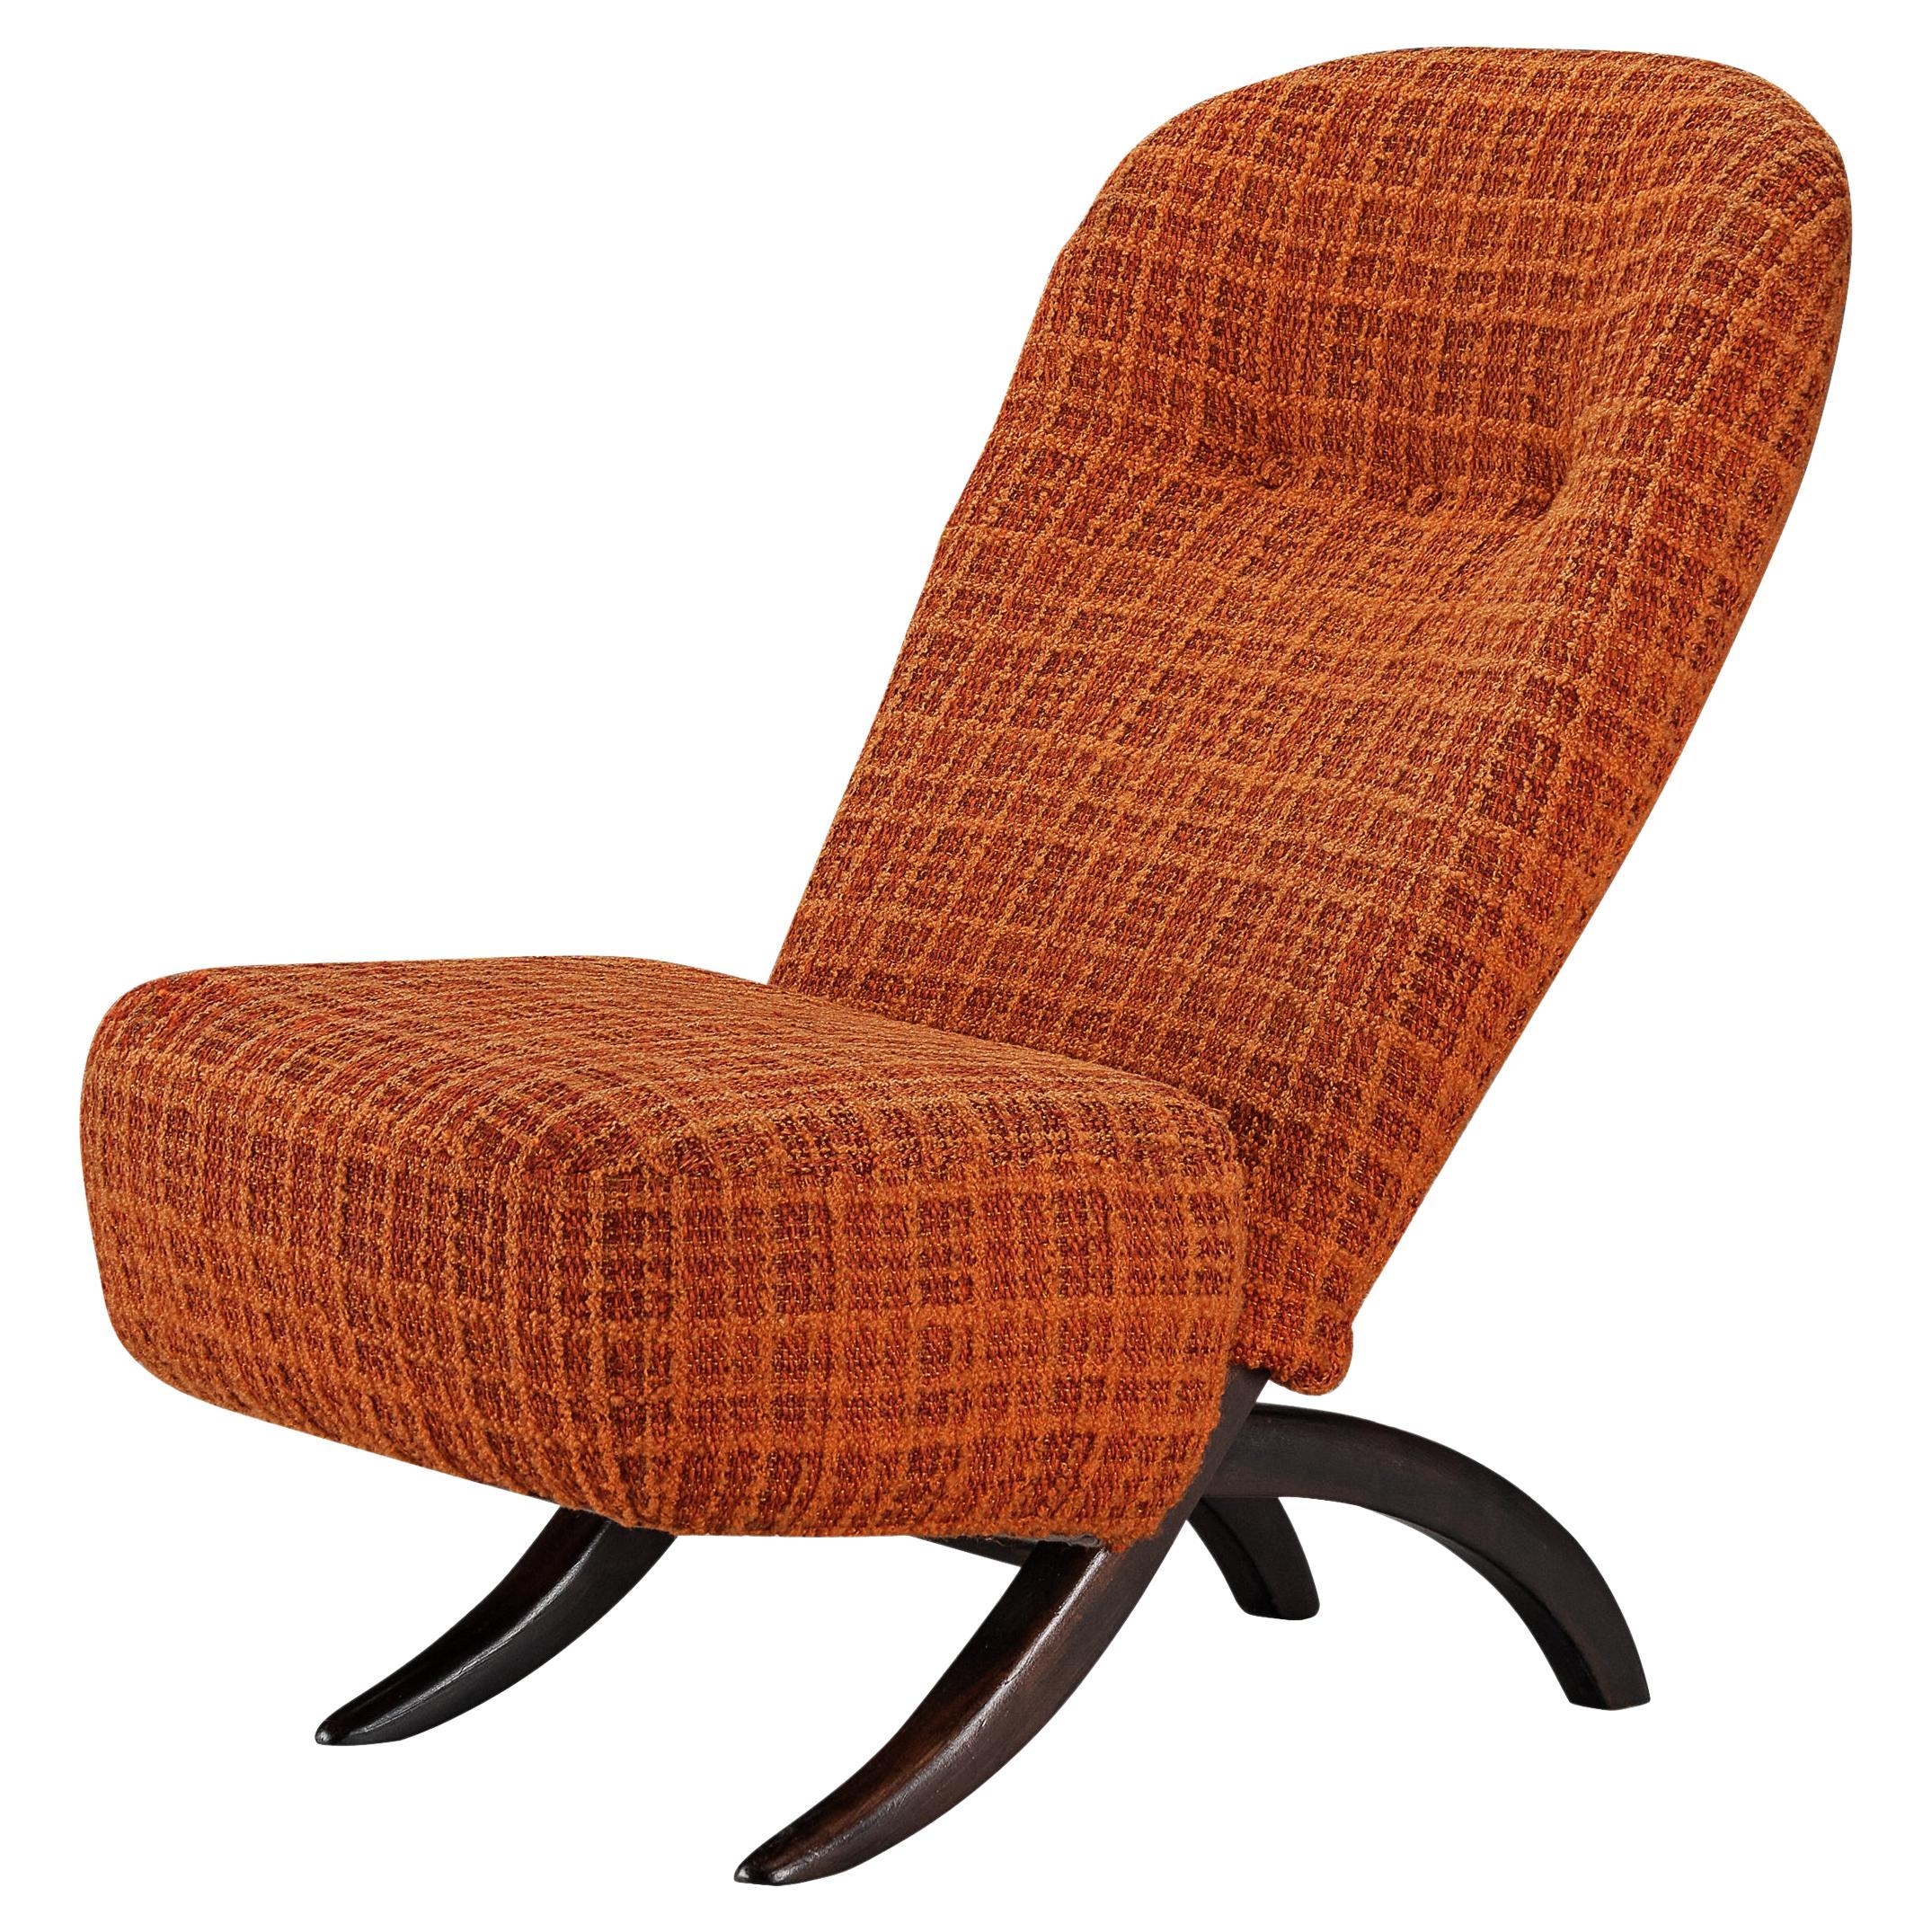 Theo Ruth für Artifort 'Congo' Easy Chair aus Esche und orangefarbener Polsterung 